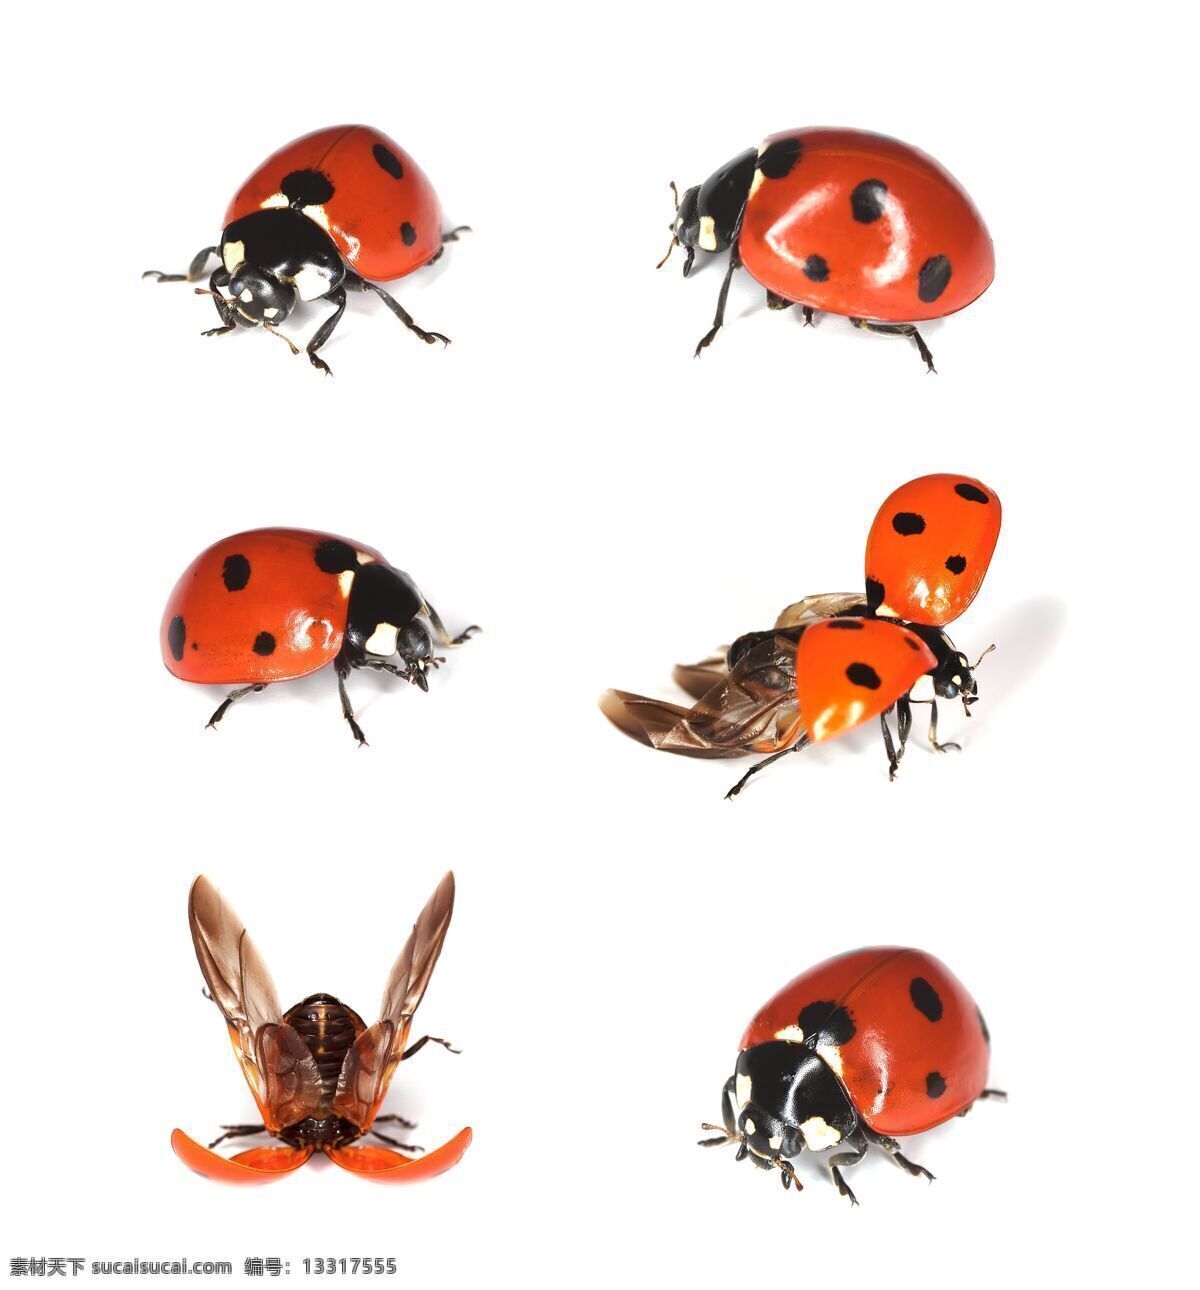 瓢虫 甲虫 昆虫 瓢虫图片 摄影图库 生物世界 红色瓢虫 昆虫特写